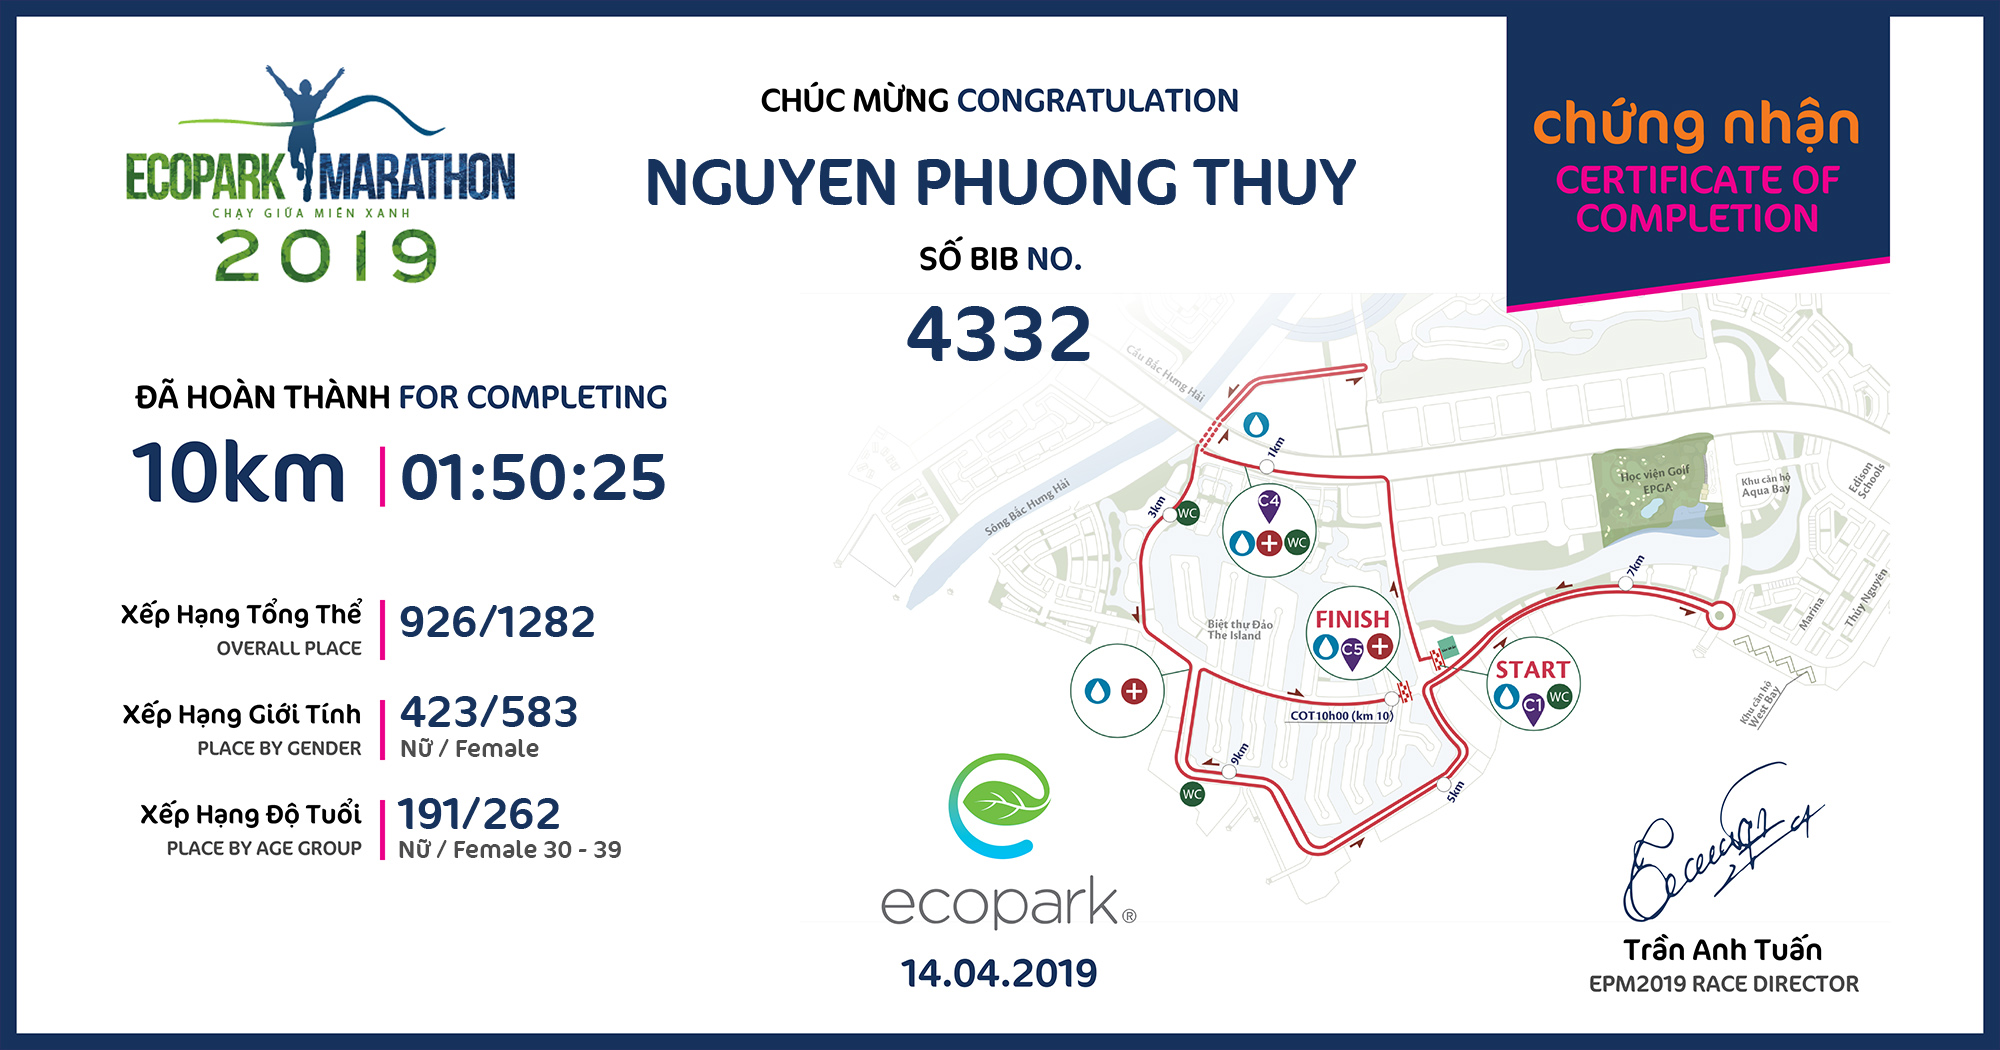 4332 - Nguyen Phuong Thuy